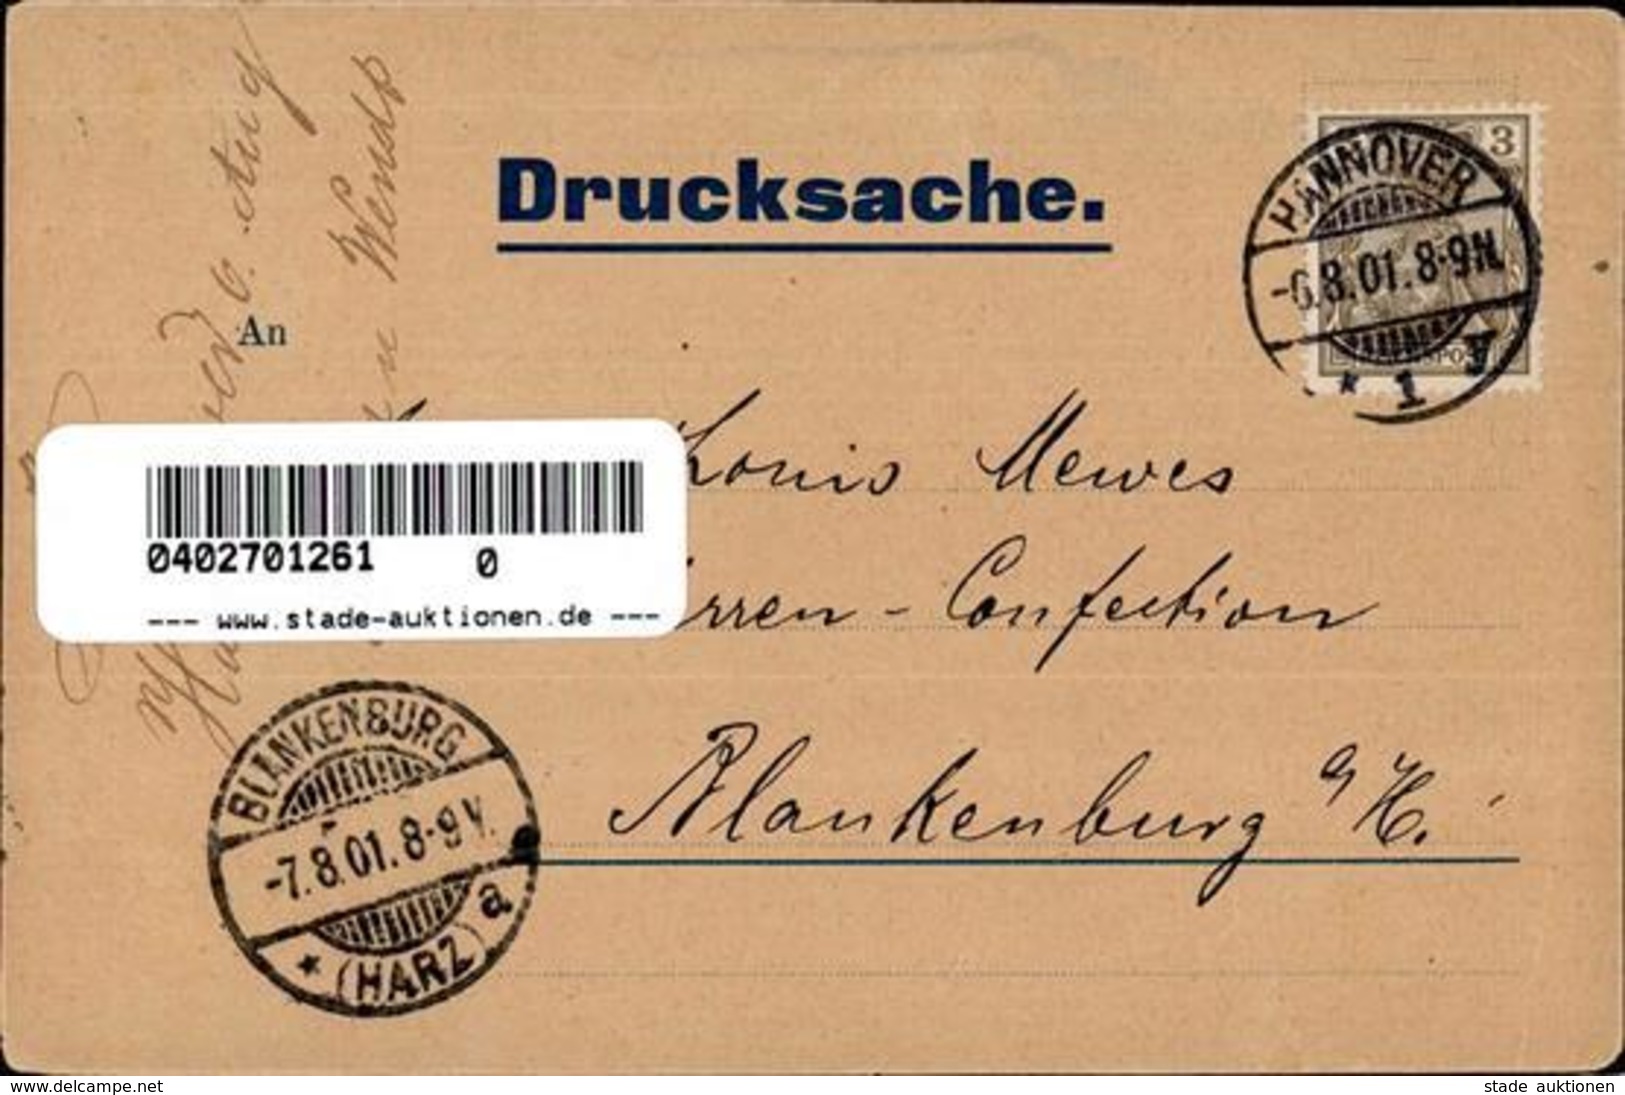 Werbung Hannover (3000) Kleiderbügel Sinram & Wendt Werbe AK 1901 I-II Publicite - Werbepostkarten